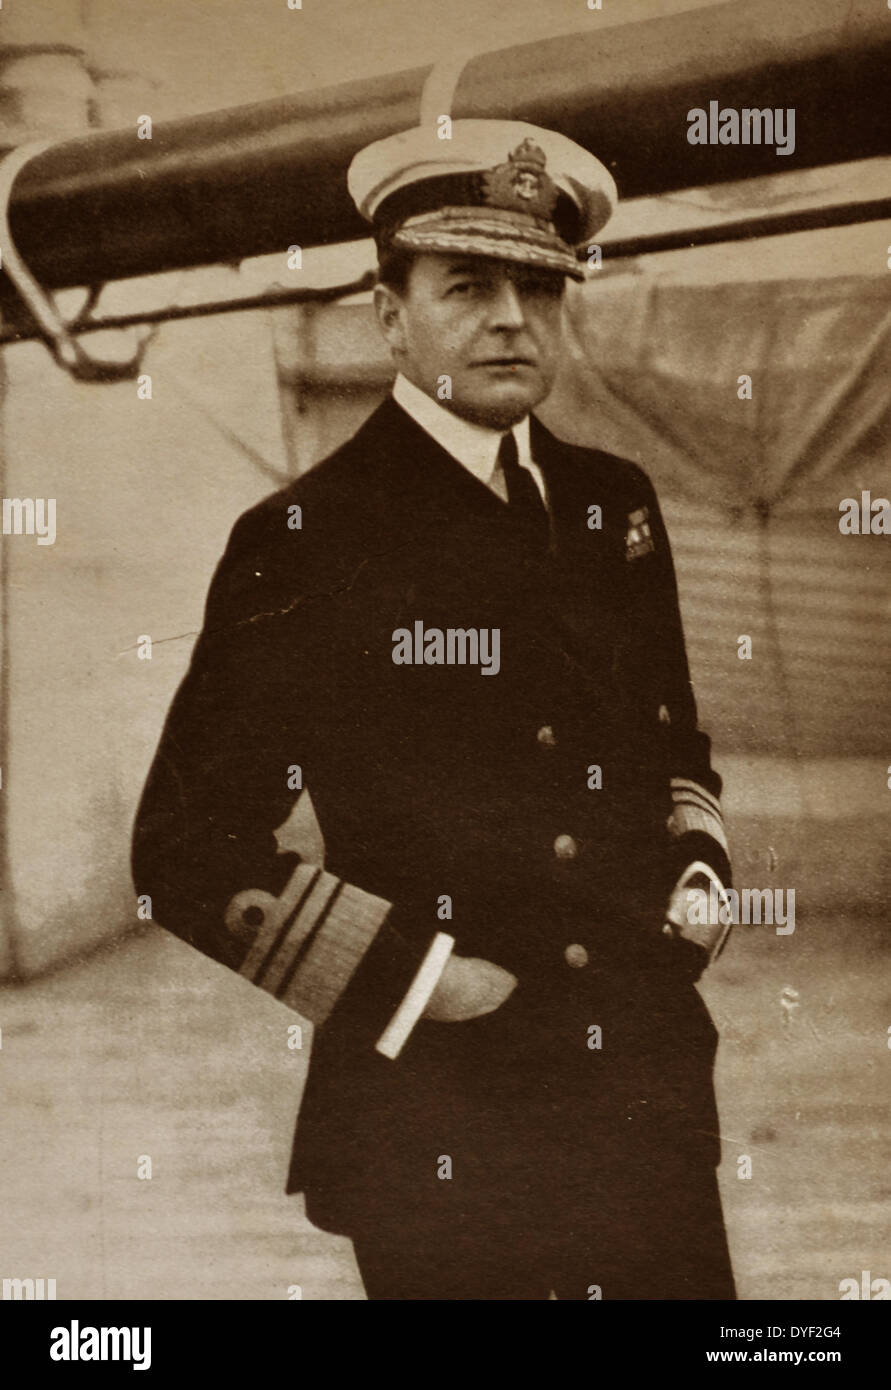 L'ammiraglio David Beatty 1914. L'ammiraglio della flotta David Richard Beatty, primo Earl Beatty (17 gennaio 1871 - 11 Marzo 1936) era un Royal Navy officer. Dopo aver prestato servizio nella guerra di Mahdist e poi la risposta per il Boxer Rebellion ha comandato il primo incrociatore da battaglia squadrone alla battaglia dello Jutland nel 1916, un tatticamente indeciso impegno dopo che il suo approccio aggressivo è stato contrastato con la prudenza del suo comandante ammiraglio sir John Jellicoe. Foto Stock